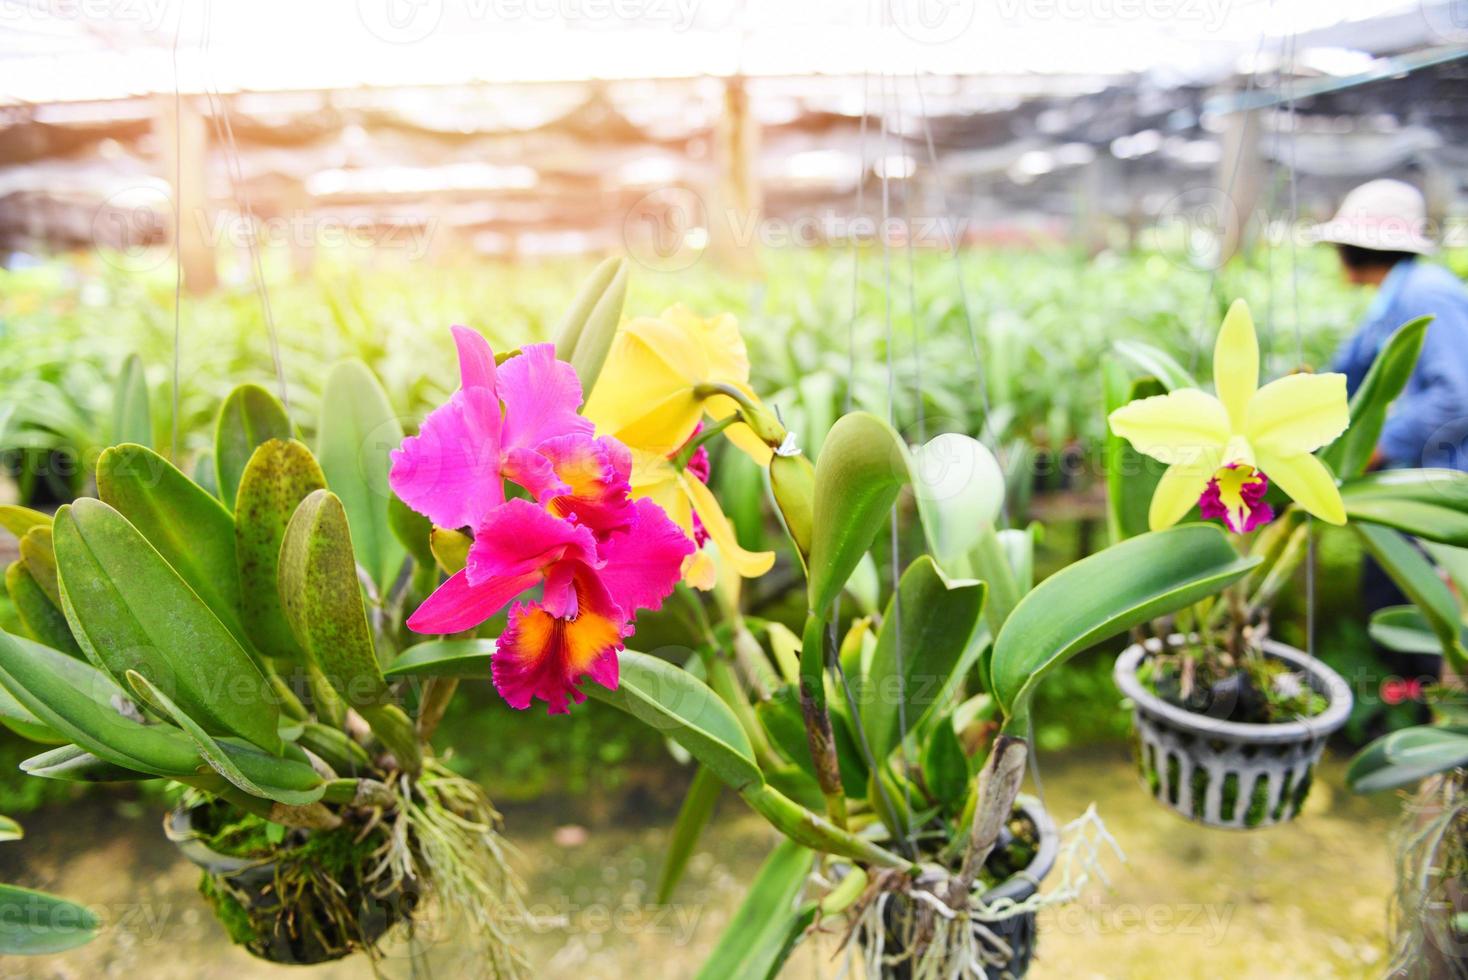 Fazenda de orquídeas cattleya - linda flor de orquídea colorida rosa e amarela na planta do viveiro de fazenda natural foto